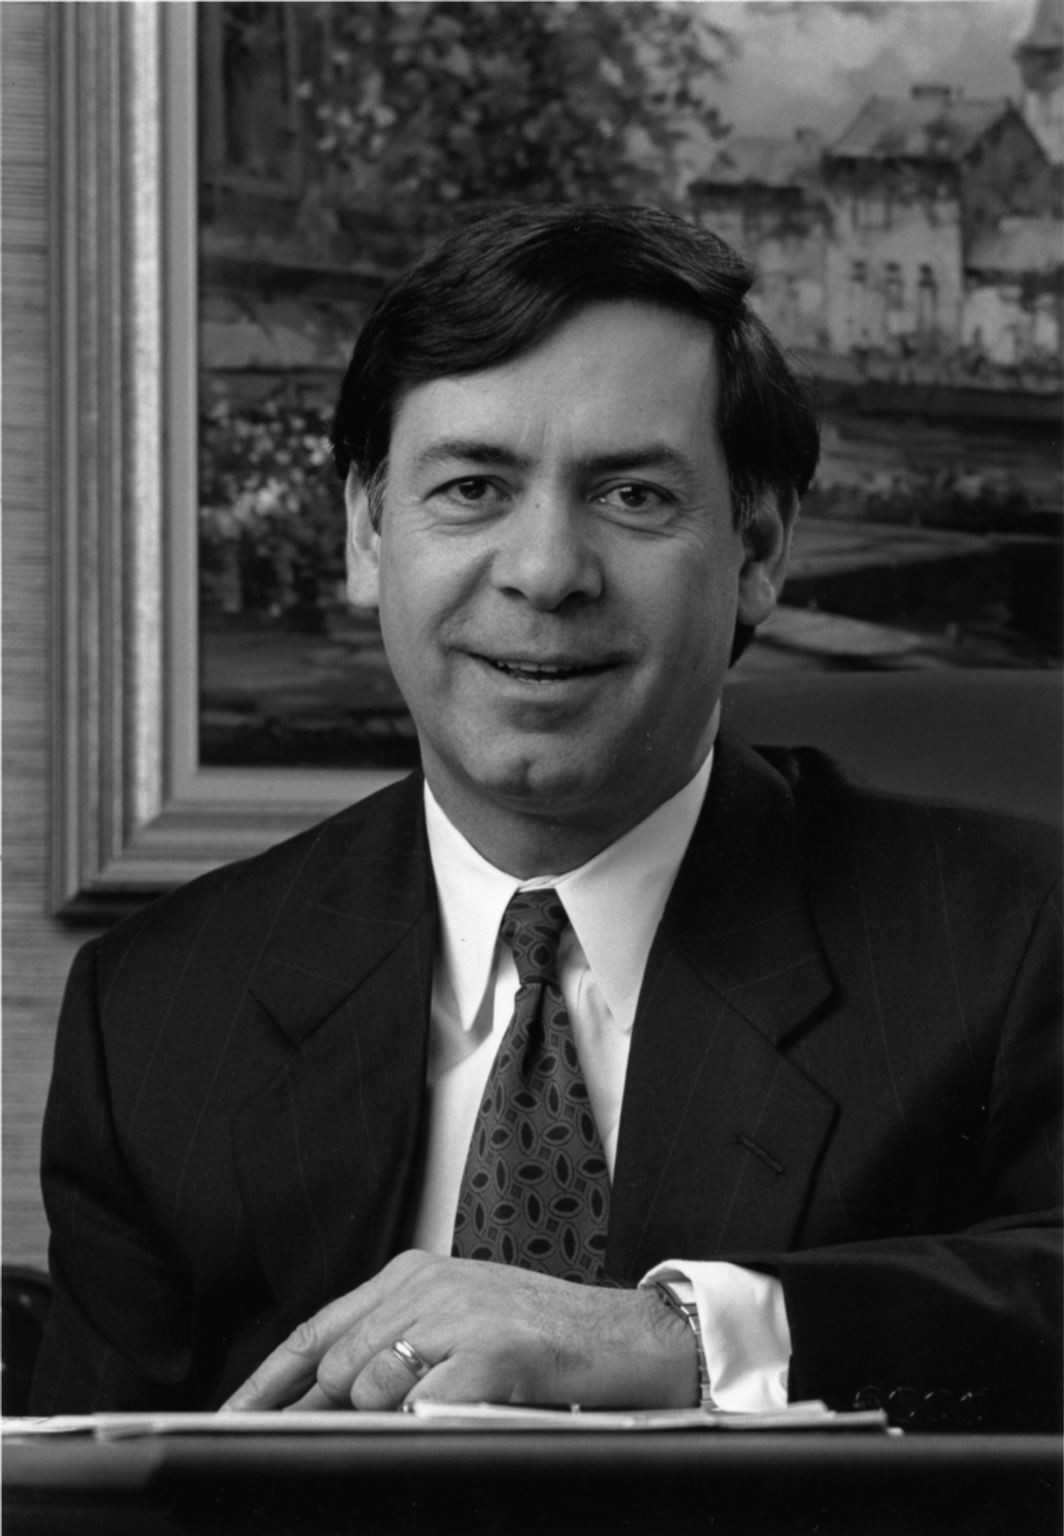 Carl E. Sassano